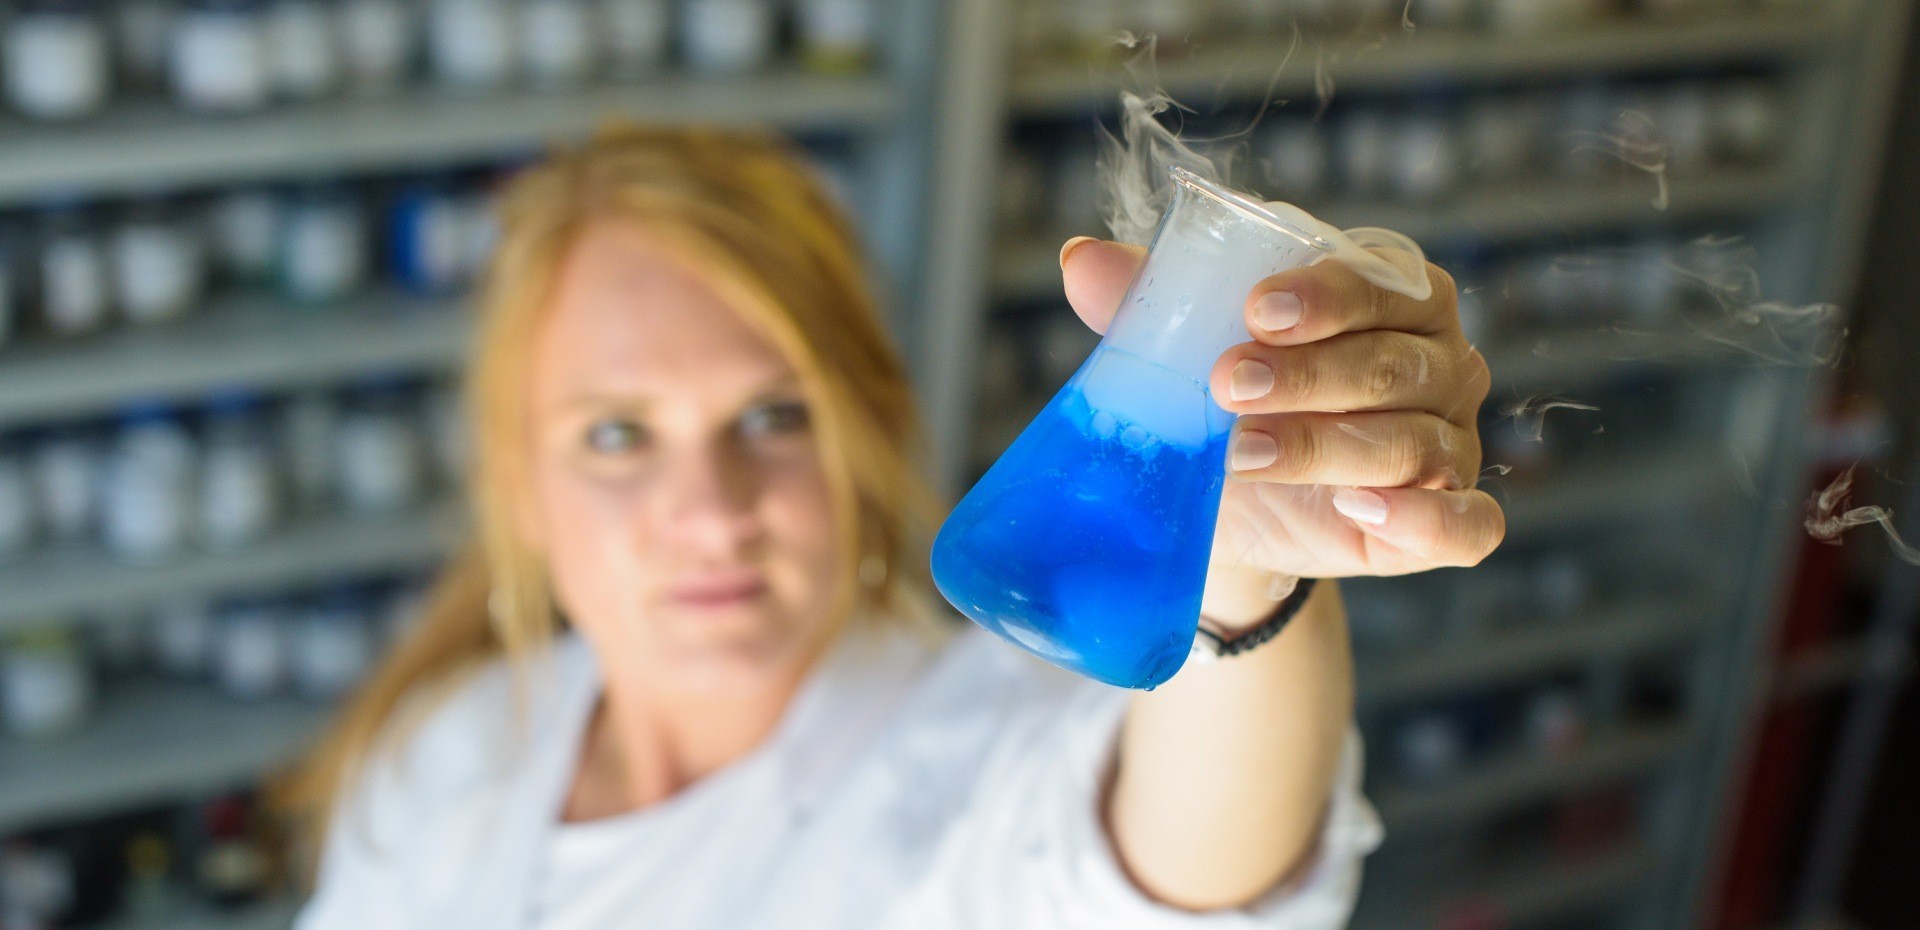 Studentin in einem Kittel hält ein Reagenzglas mit blauer Flüssigkeit hoch